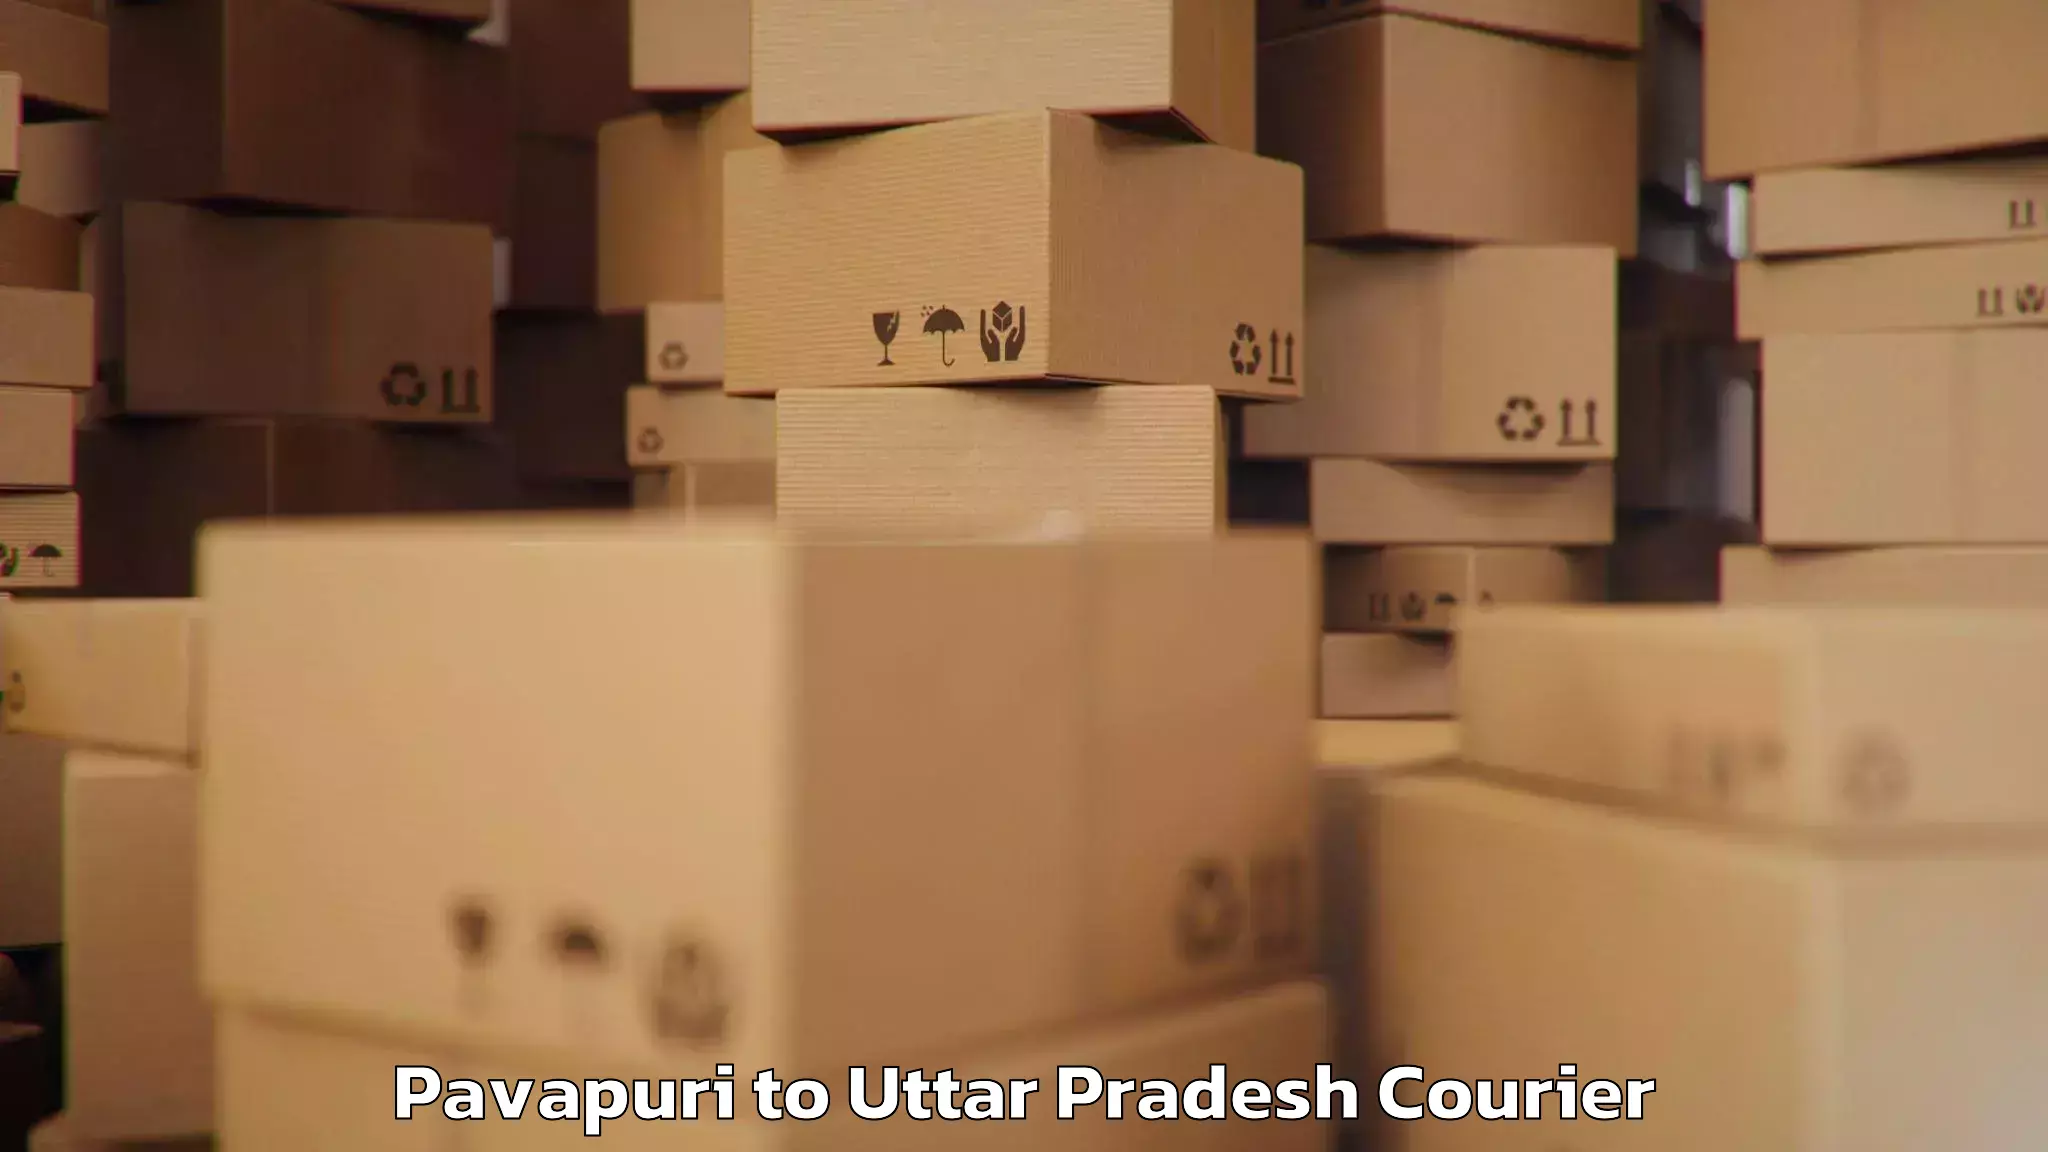 Baggage transport professionals Pavapuri to Jaunpur